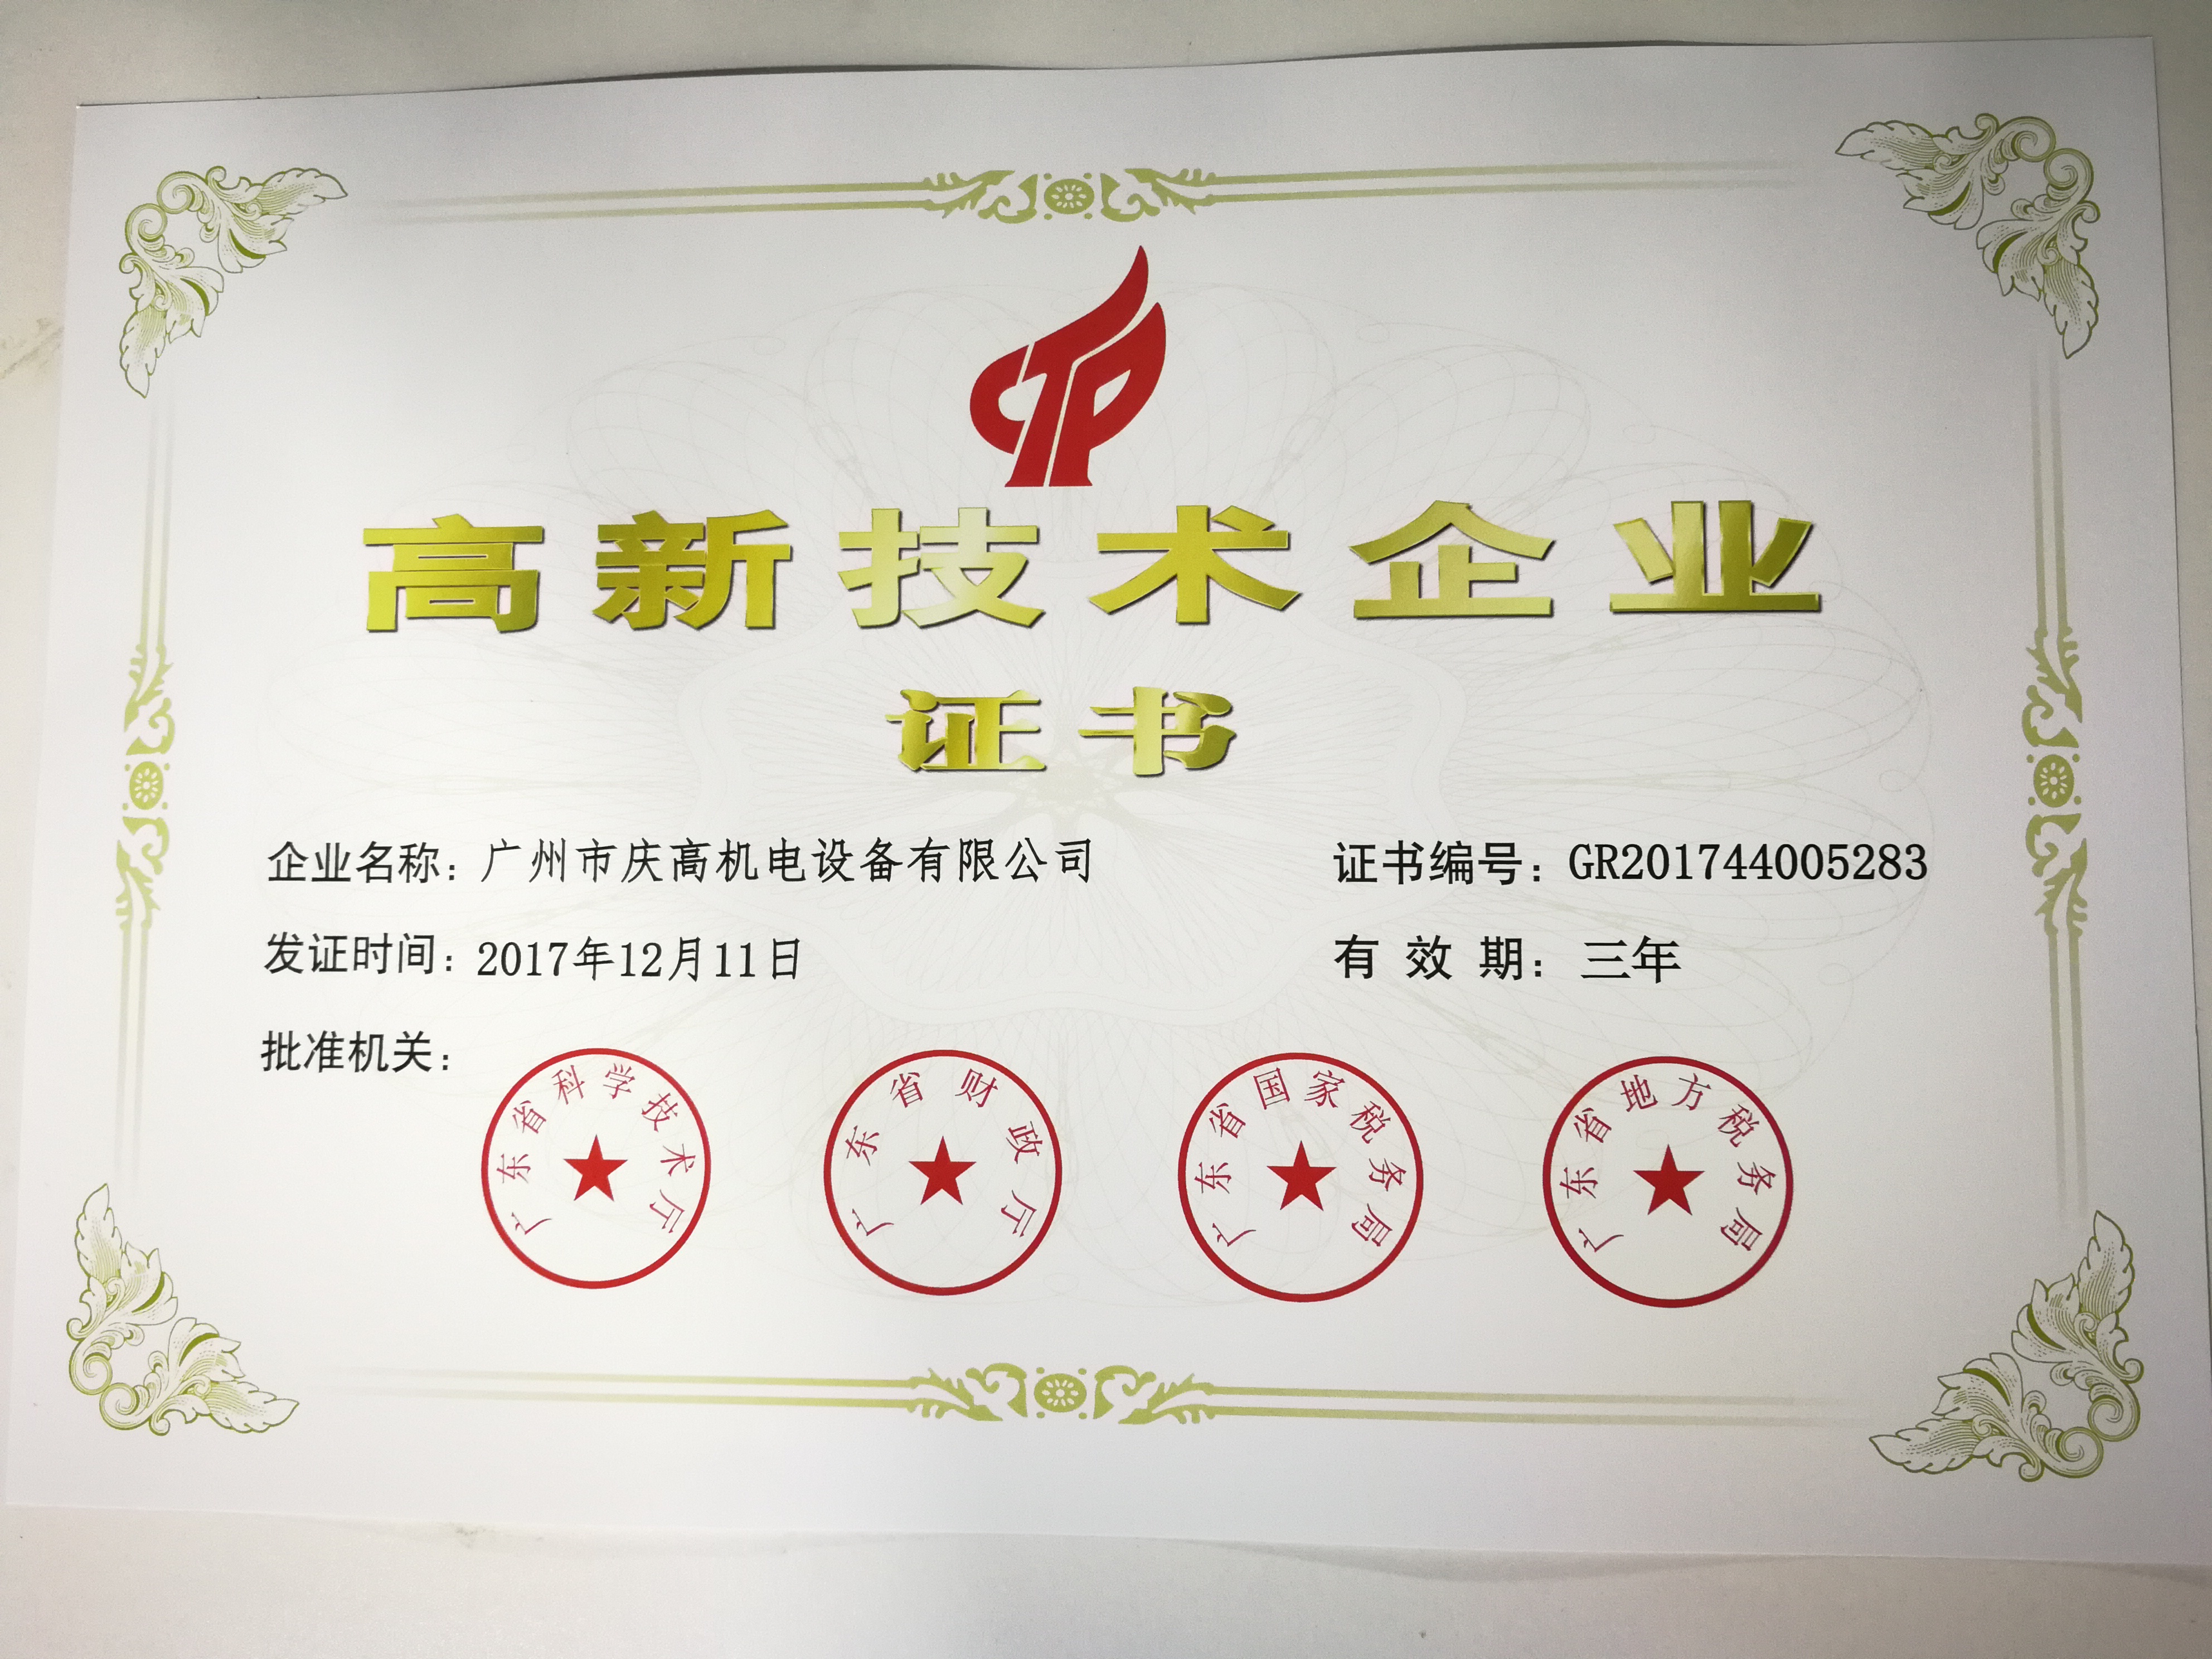 喜讯——热烈庆祝庆高机电取得高新技术企业证书